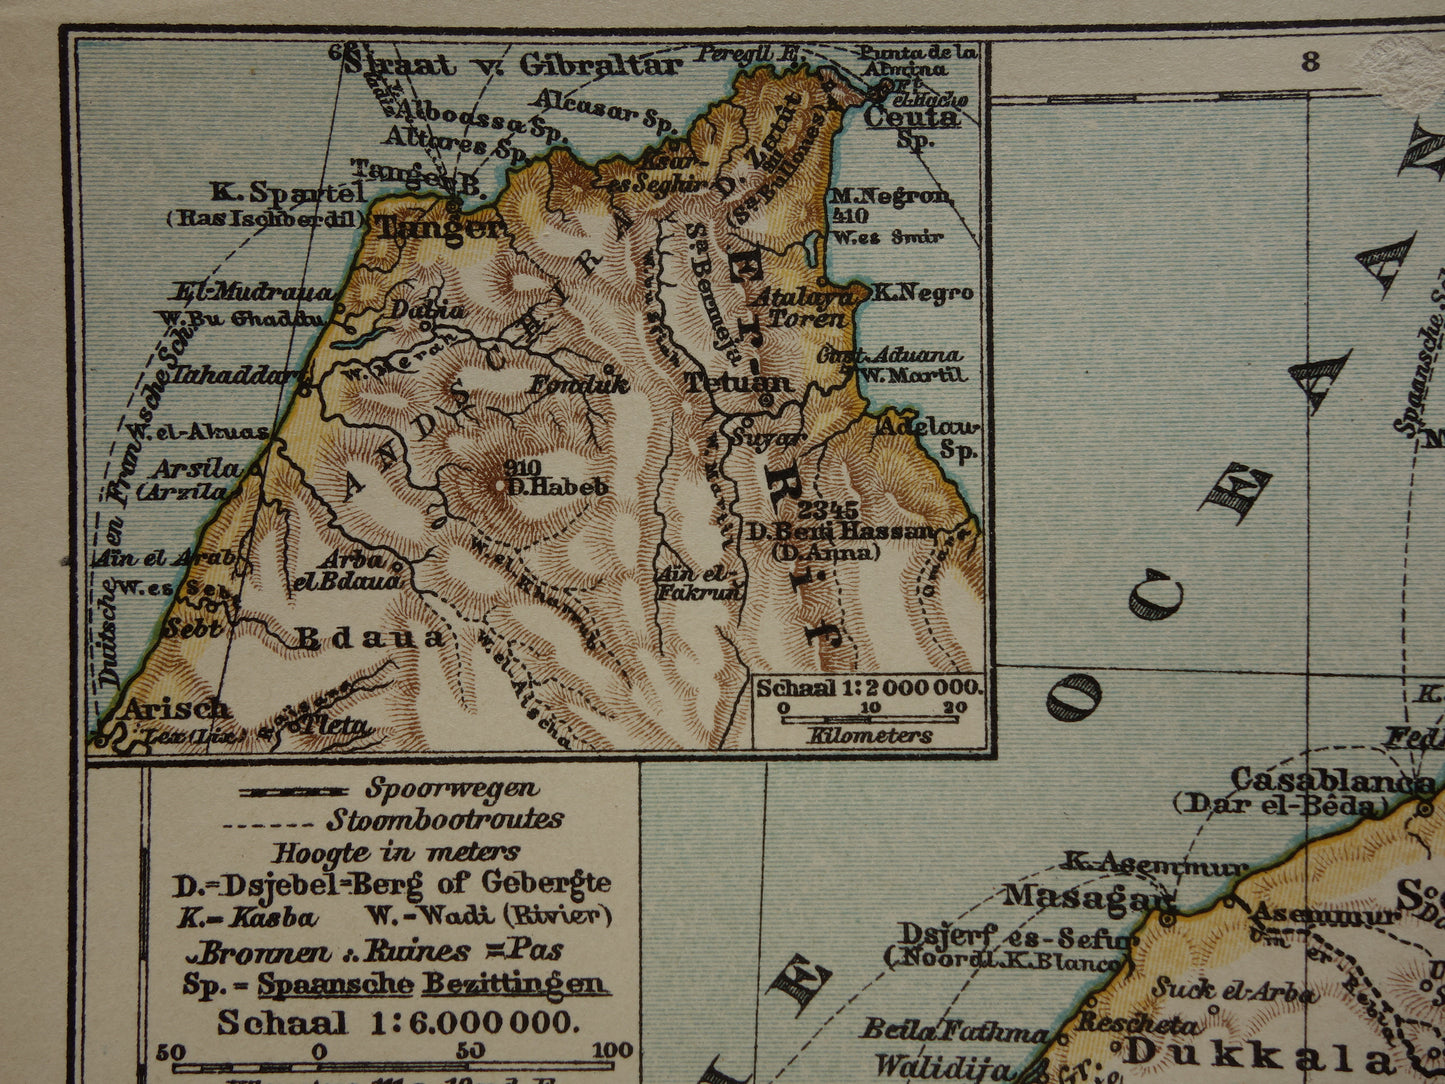 Oude kaart van Marokko uit 1909 originele antieke Nederlandse landkaart - kleine vintage kaarten